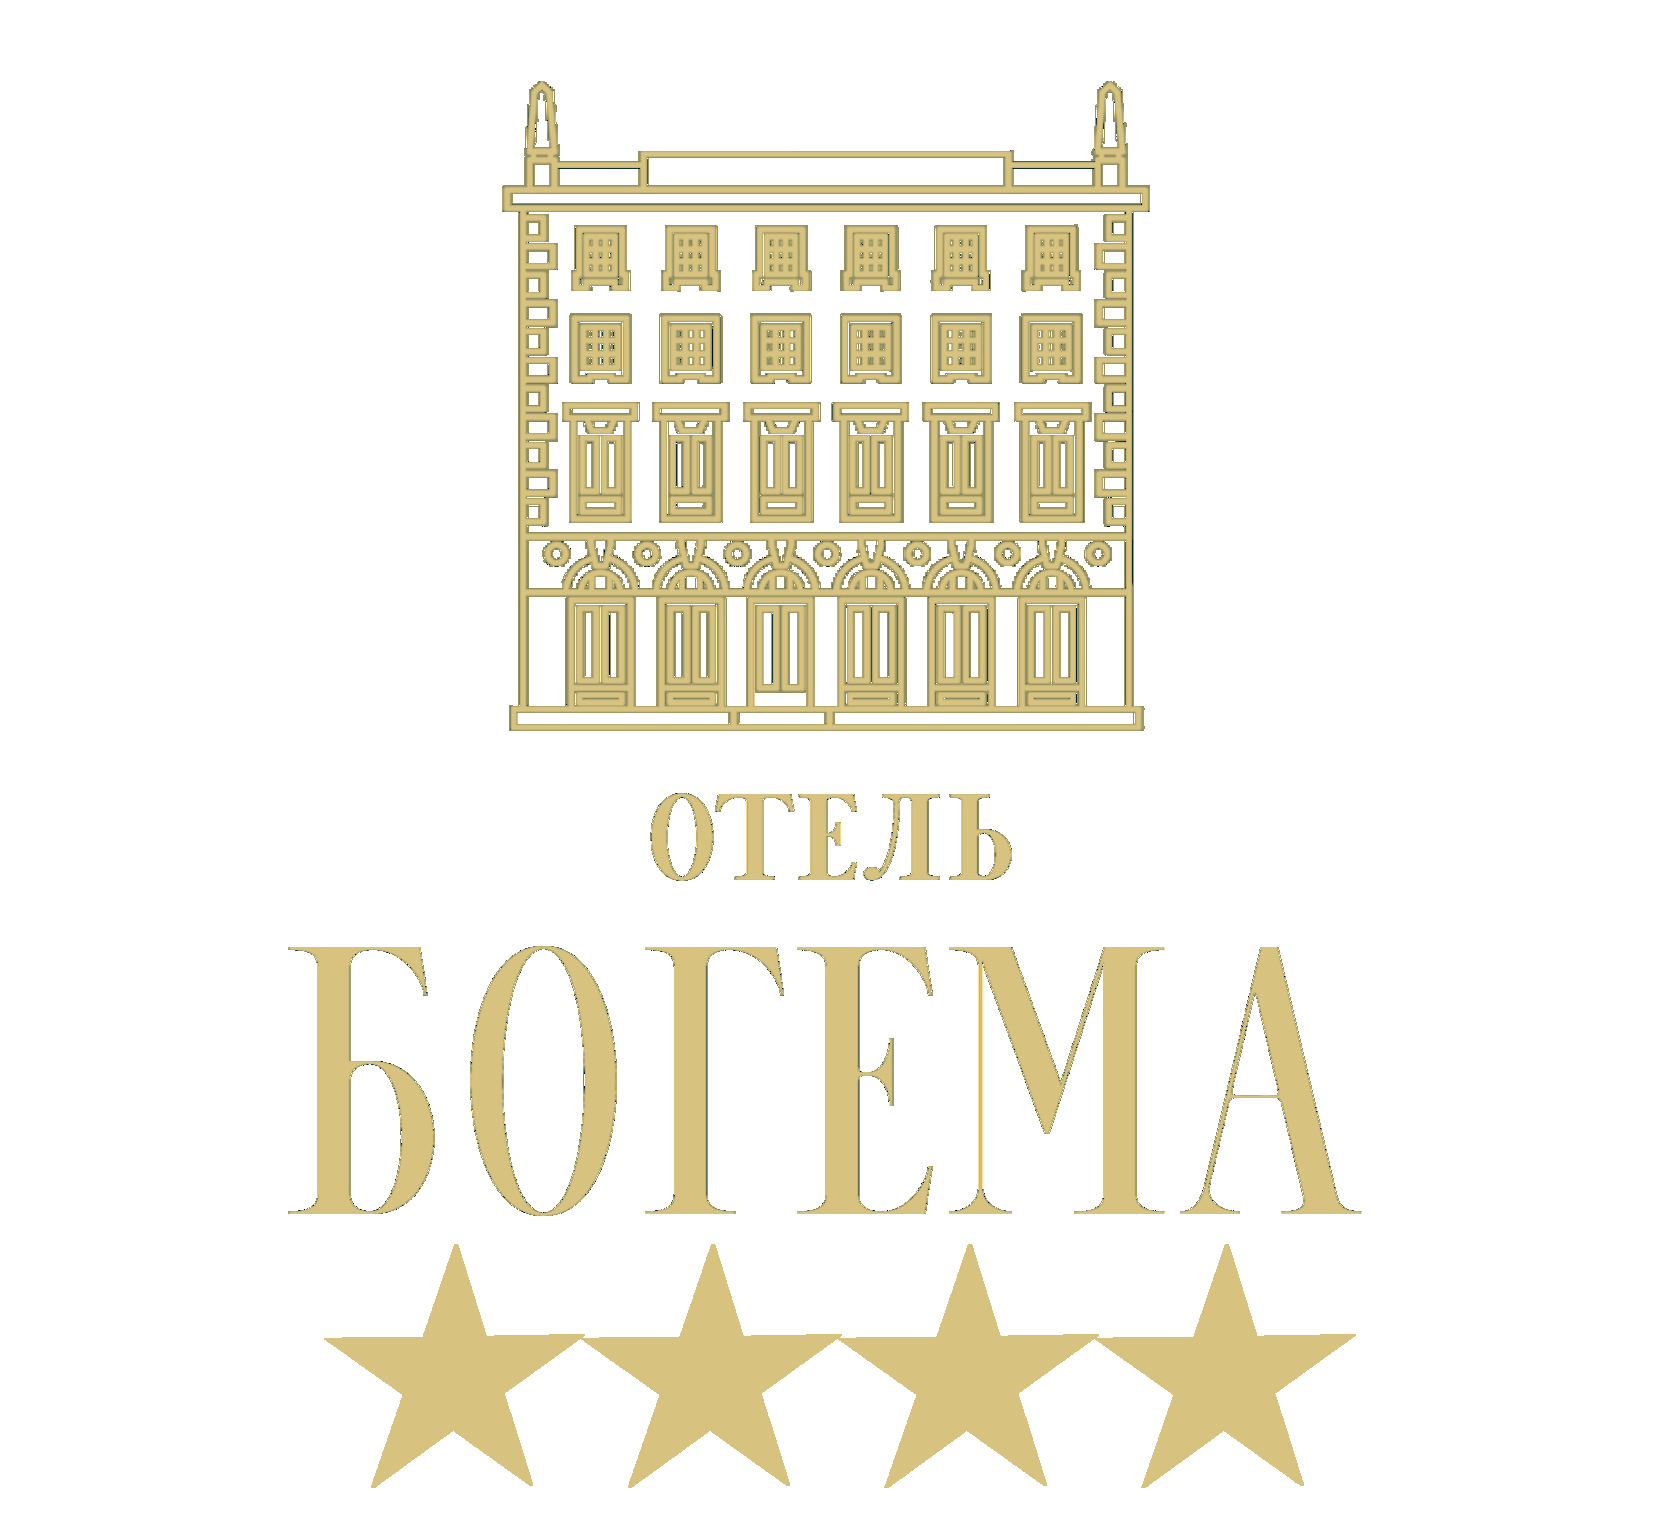 Отель Богема Санкт-Петербург. Отель Богема СПБ. Отель Богема Санкт-Петербург мучной переулок. Богема логотип.